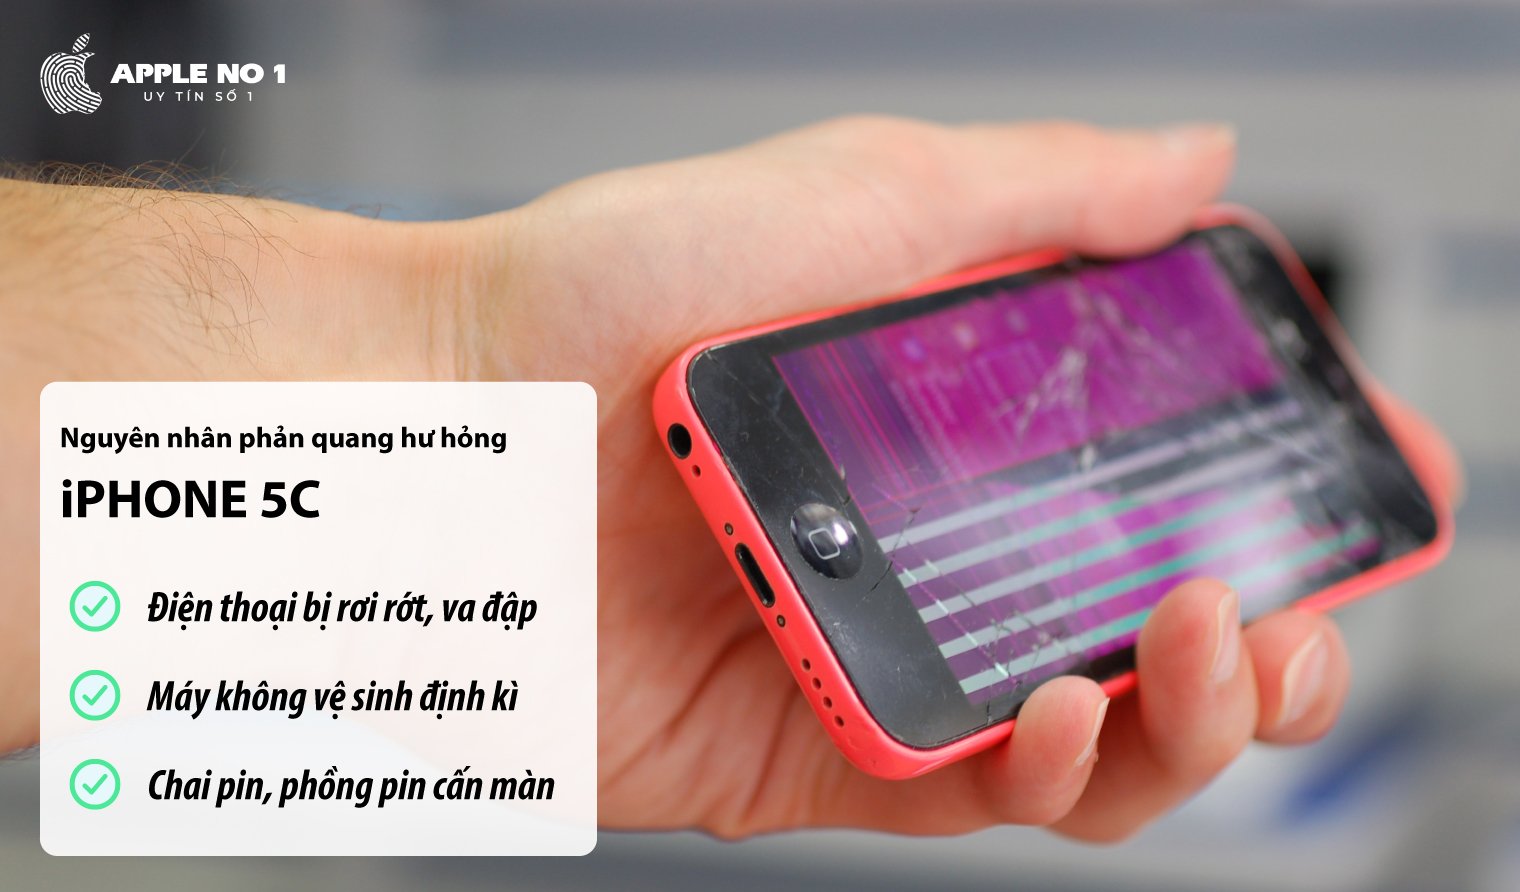 nguyen nhan phan quang iphone 5c bi hu hong